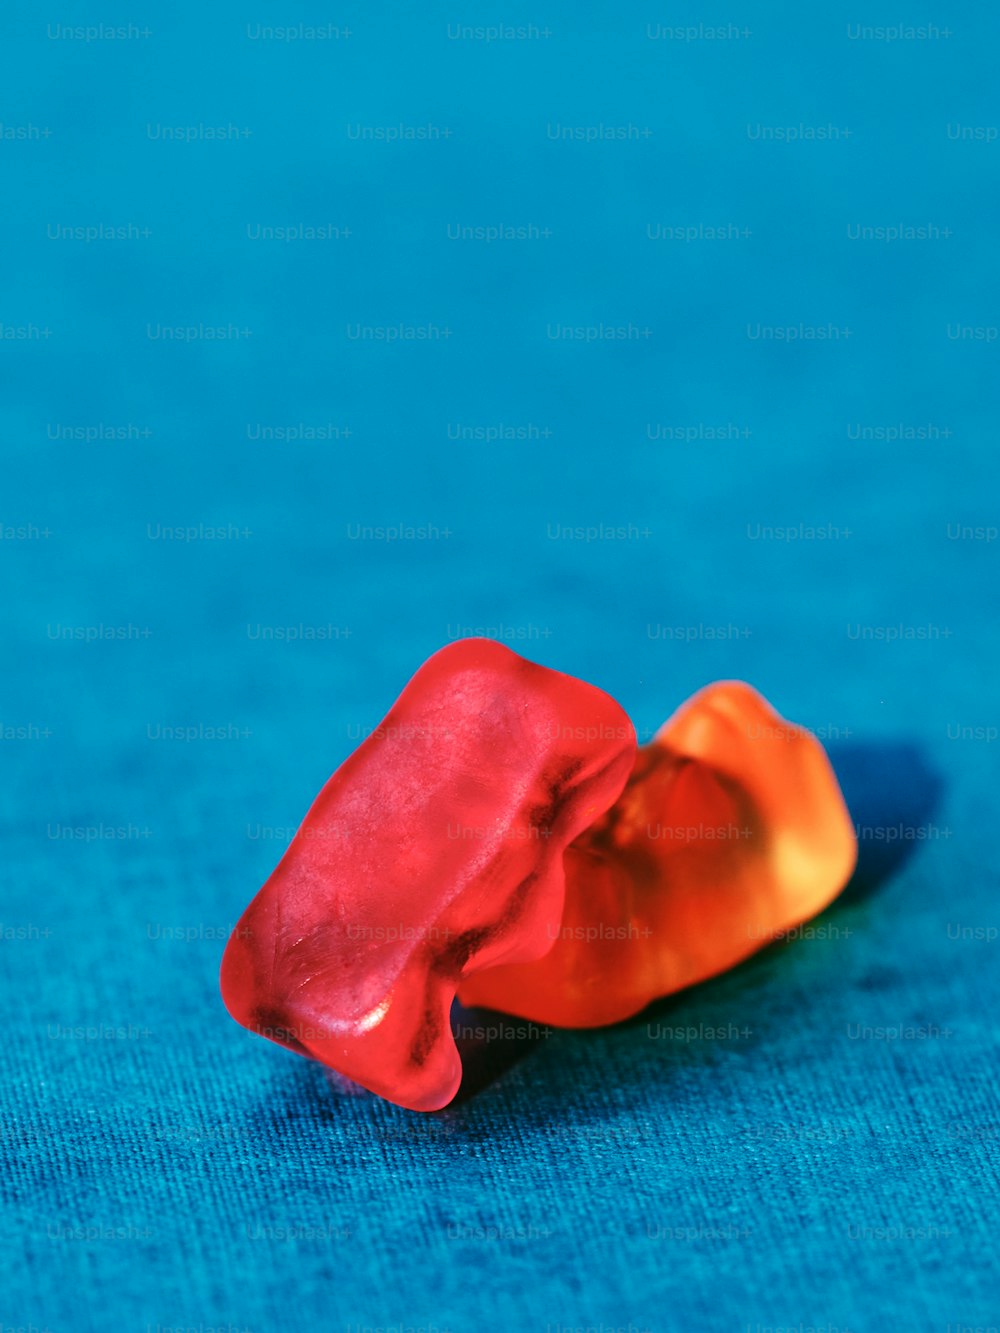 un objeto rojo y naranja sentado sobre una superficie azul